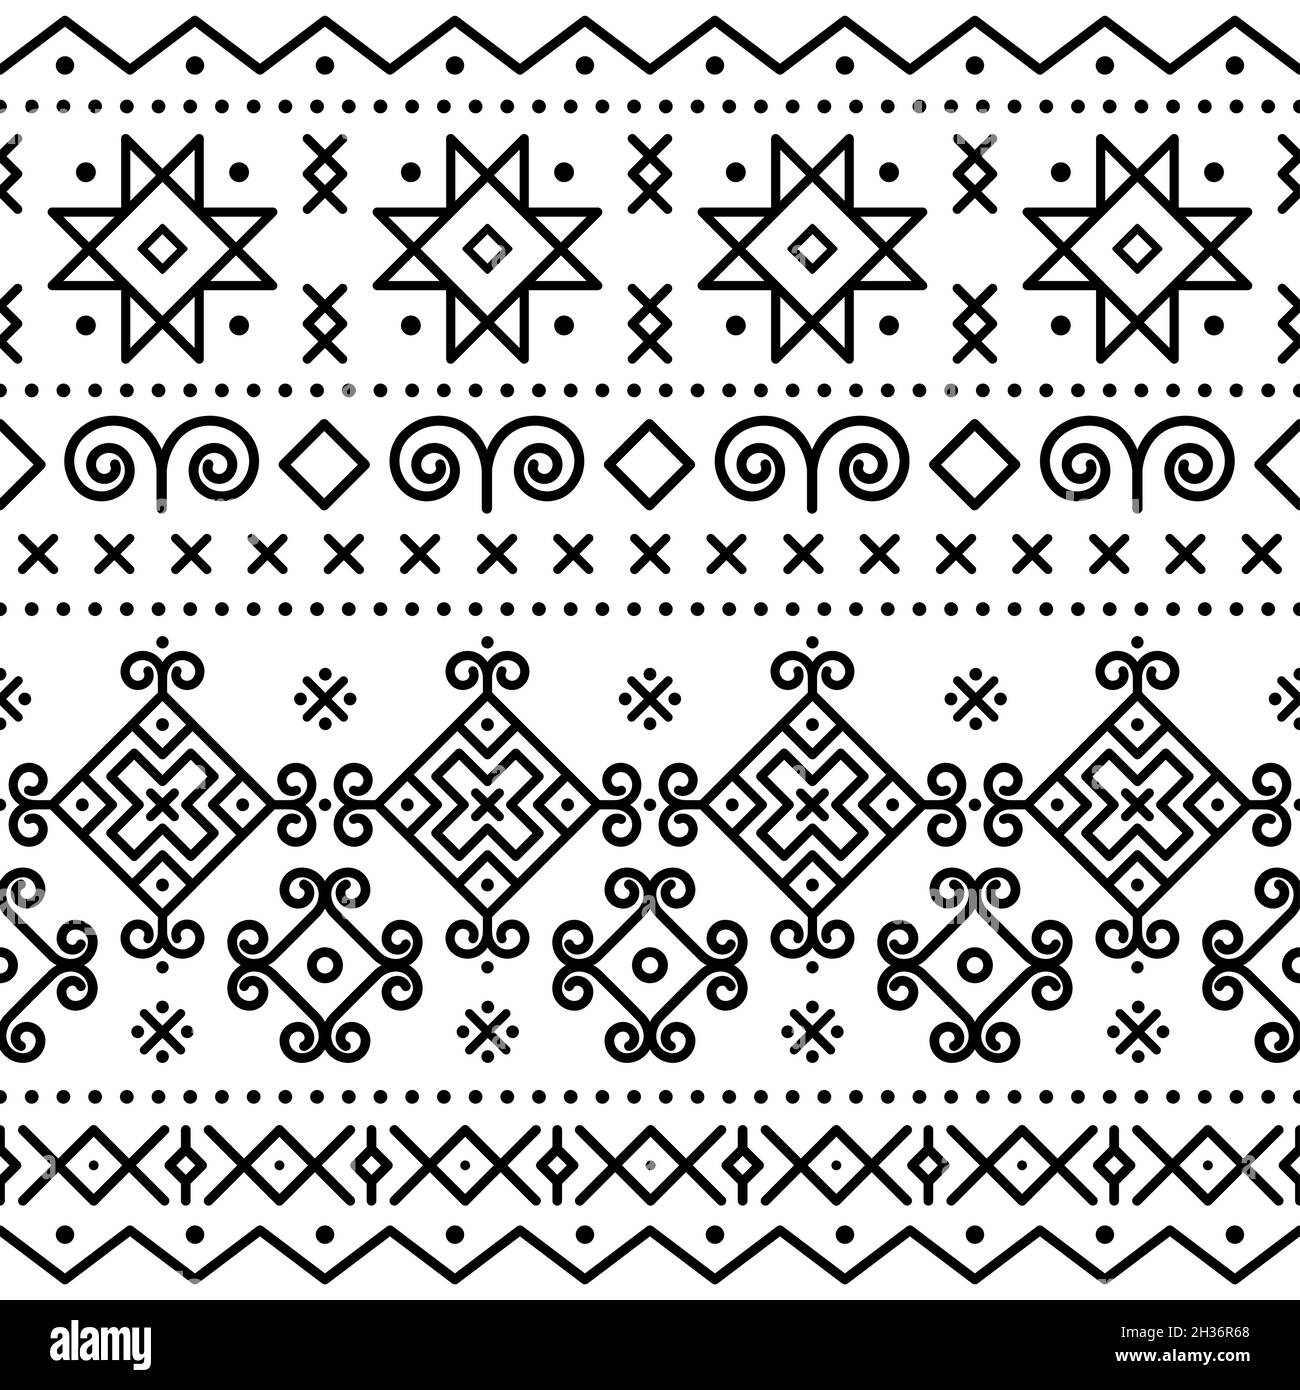 Traditionelle Volkskunst Vektor nahtlose Muster inspiriert von einem alten bemalten Häuser in Cicmany, Slowakei, Retro-Design mit Tribal geometrischen Formen in blac Stock Vektor